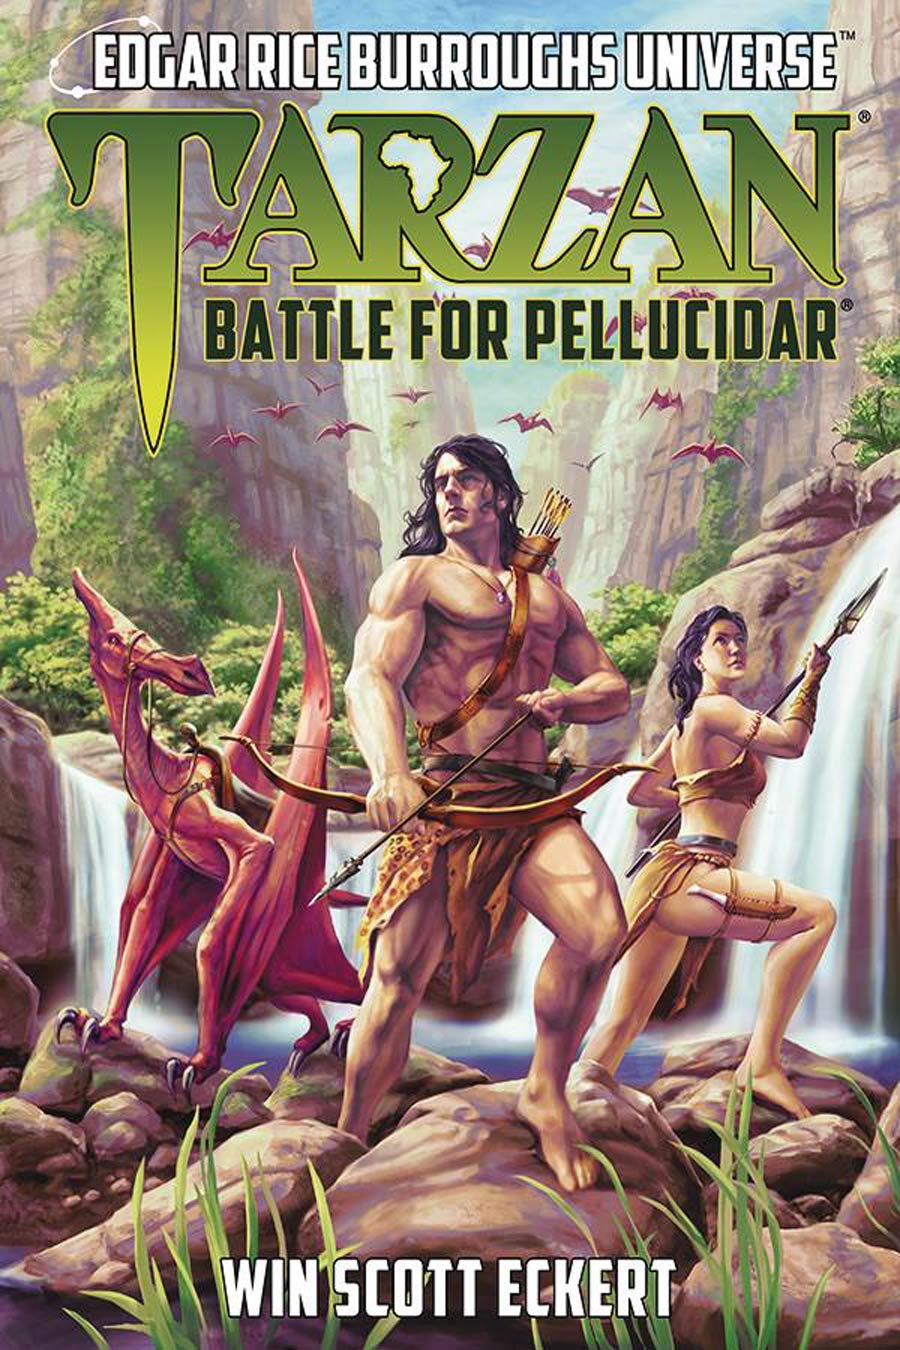 Edgar Rice Burroughs Universe Novel Vol 2 Tarzan Battle For Pellucidar TP